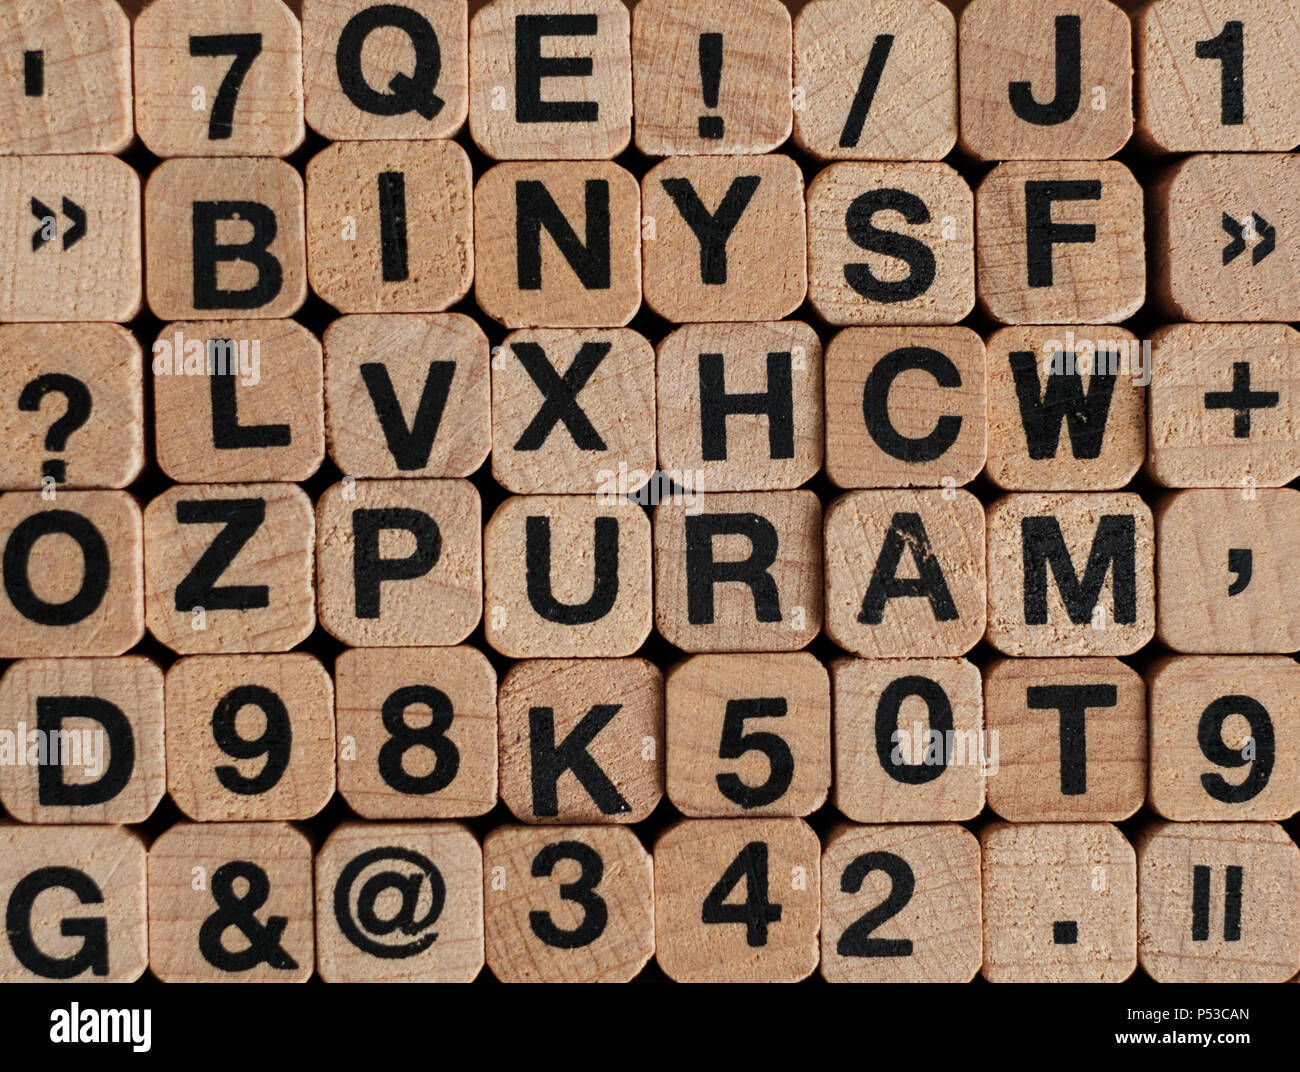 Buchstaben und Zahlen auf Holzklötze/Würfel - Buchdruck Stockfoto